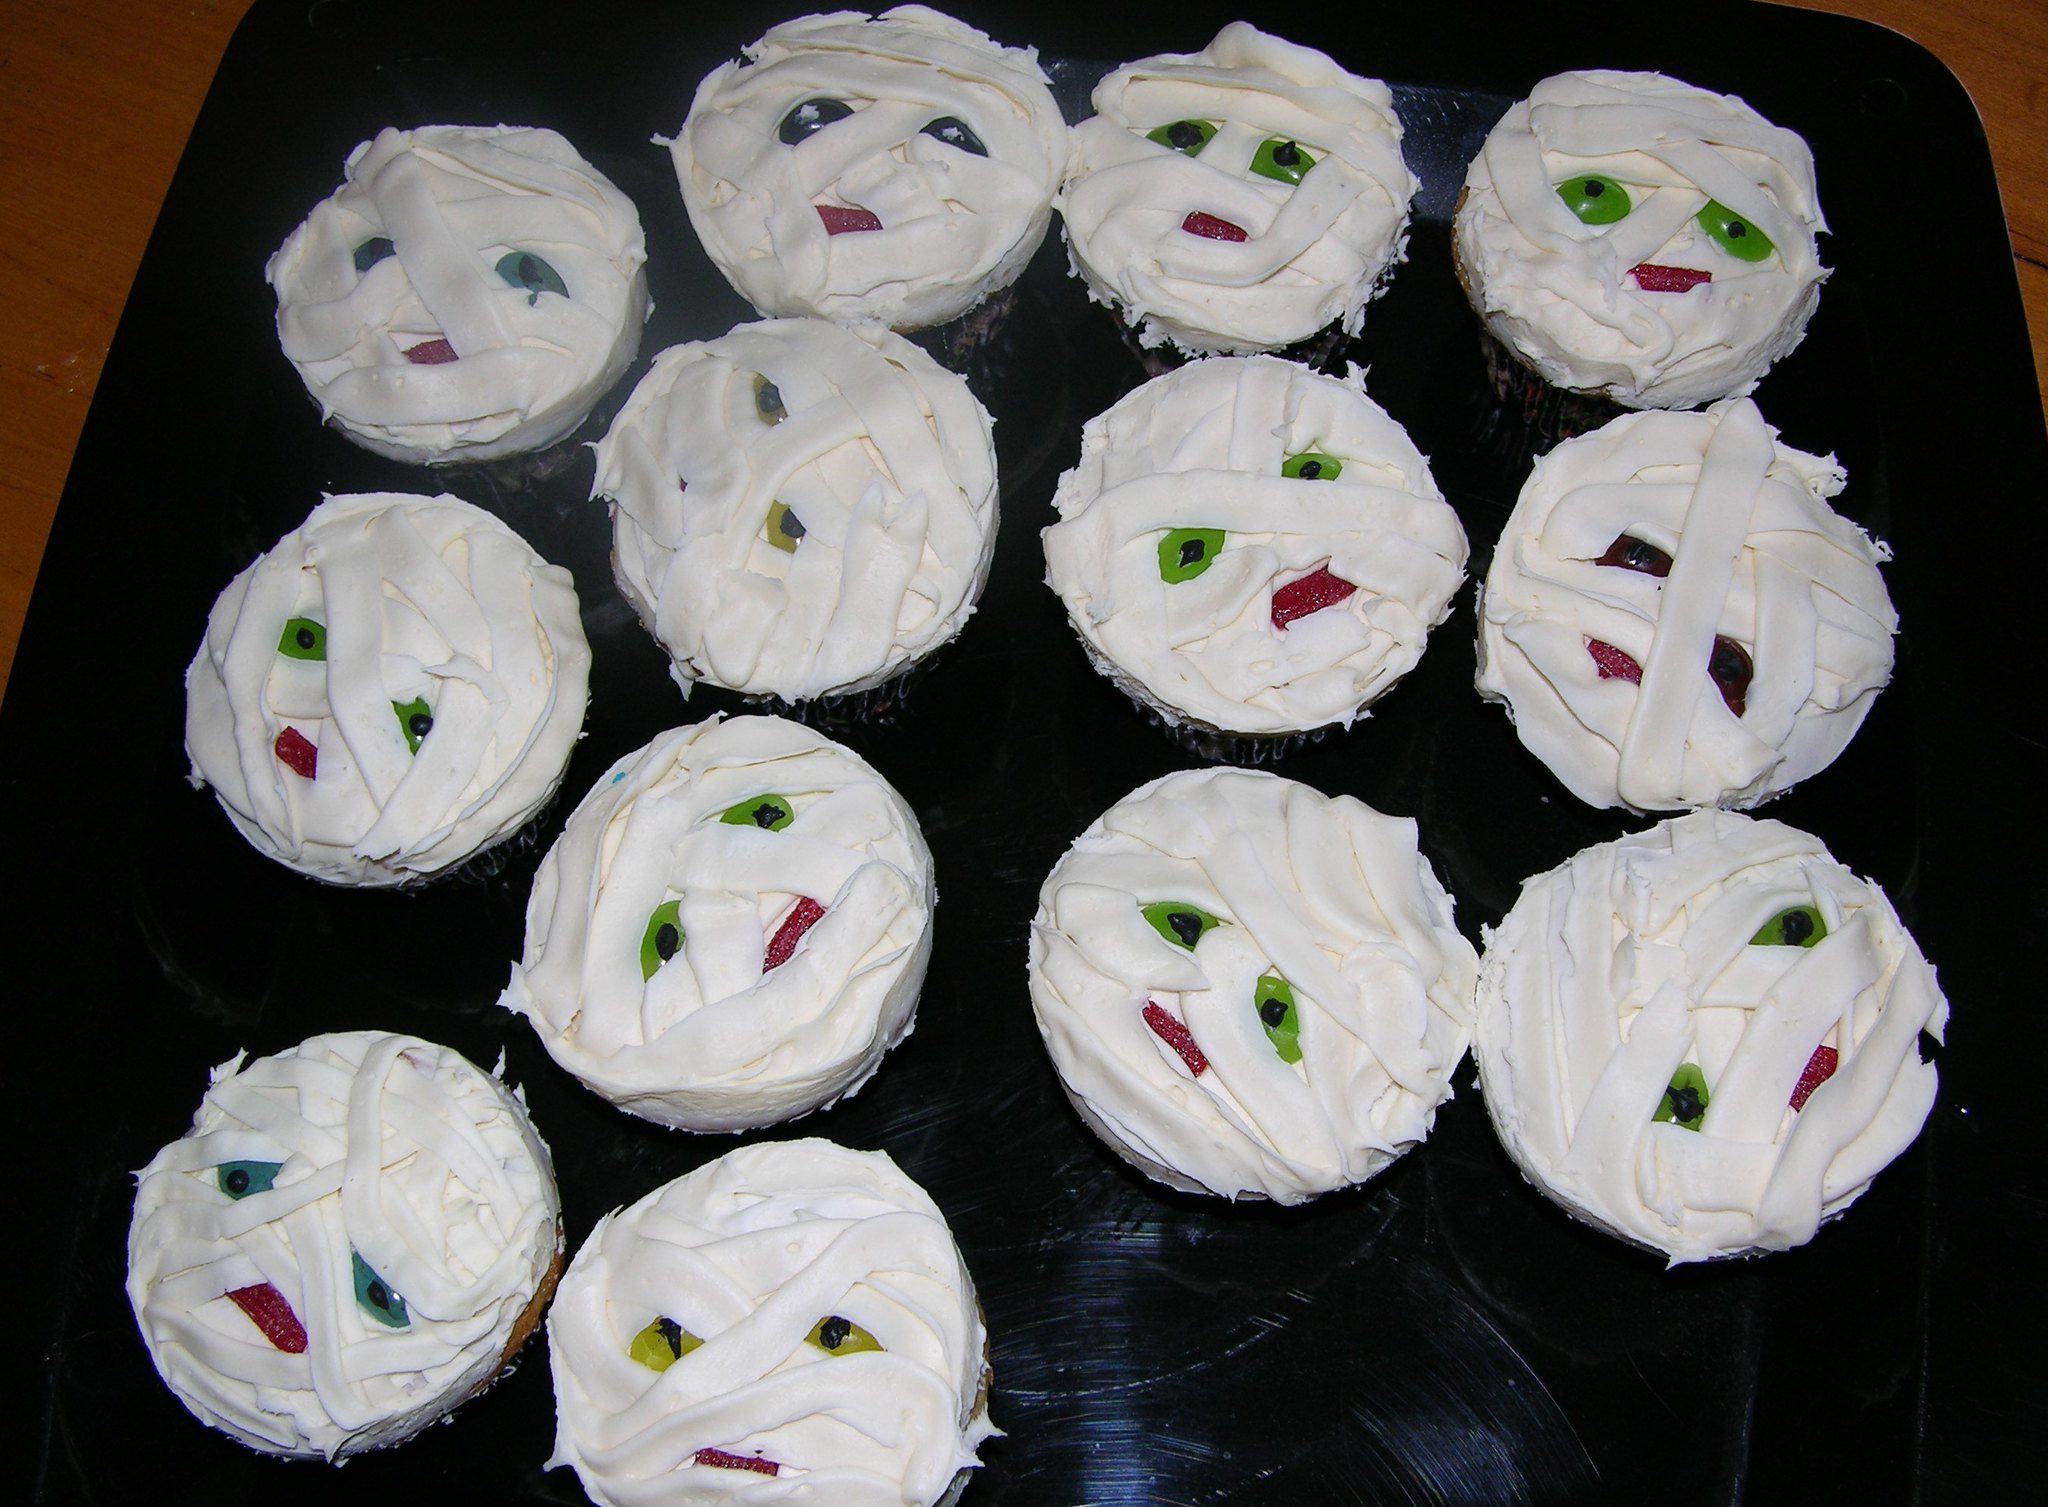 Mummy cupcakes